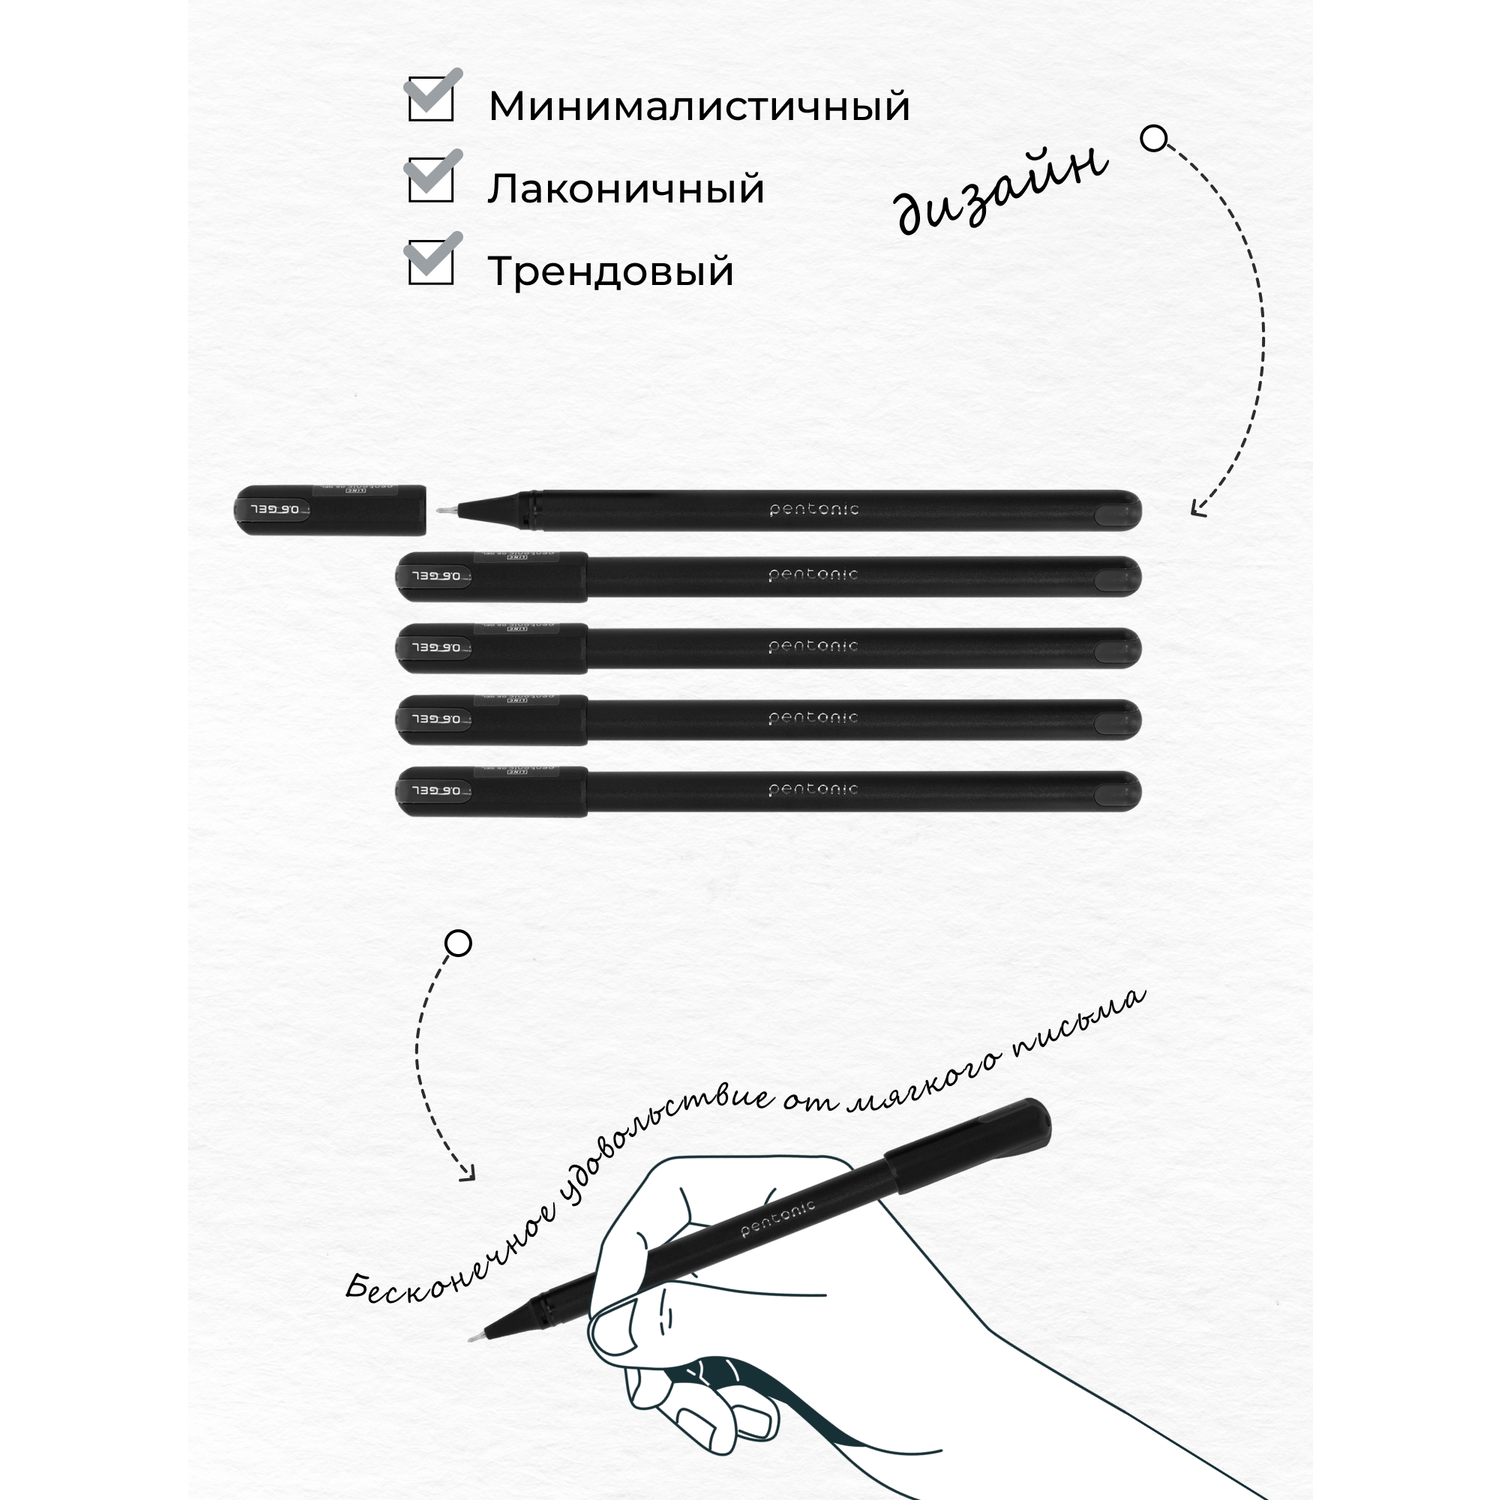 Ручки LINC гелевая черная набор 12 штук для экзаменов - фото 6